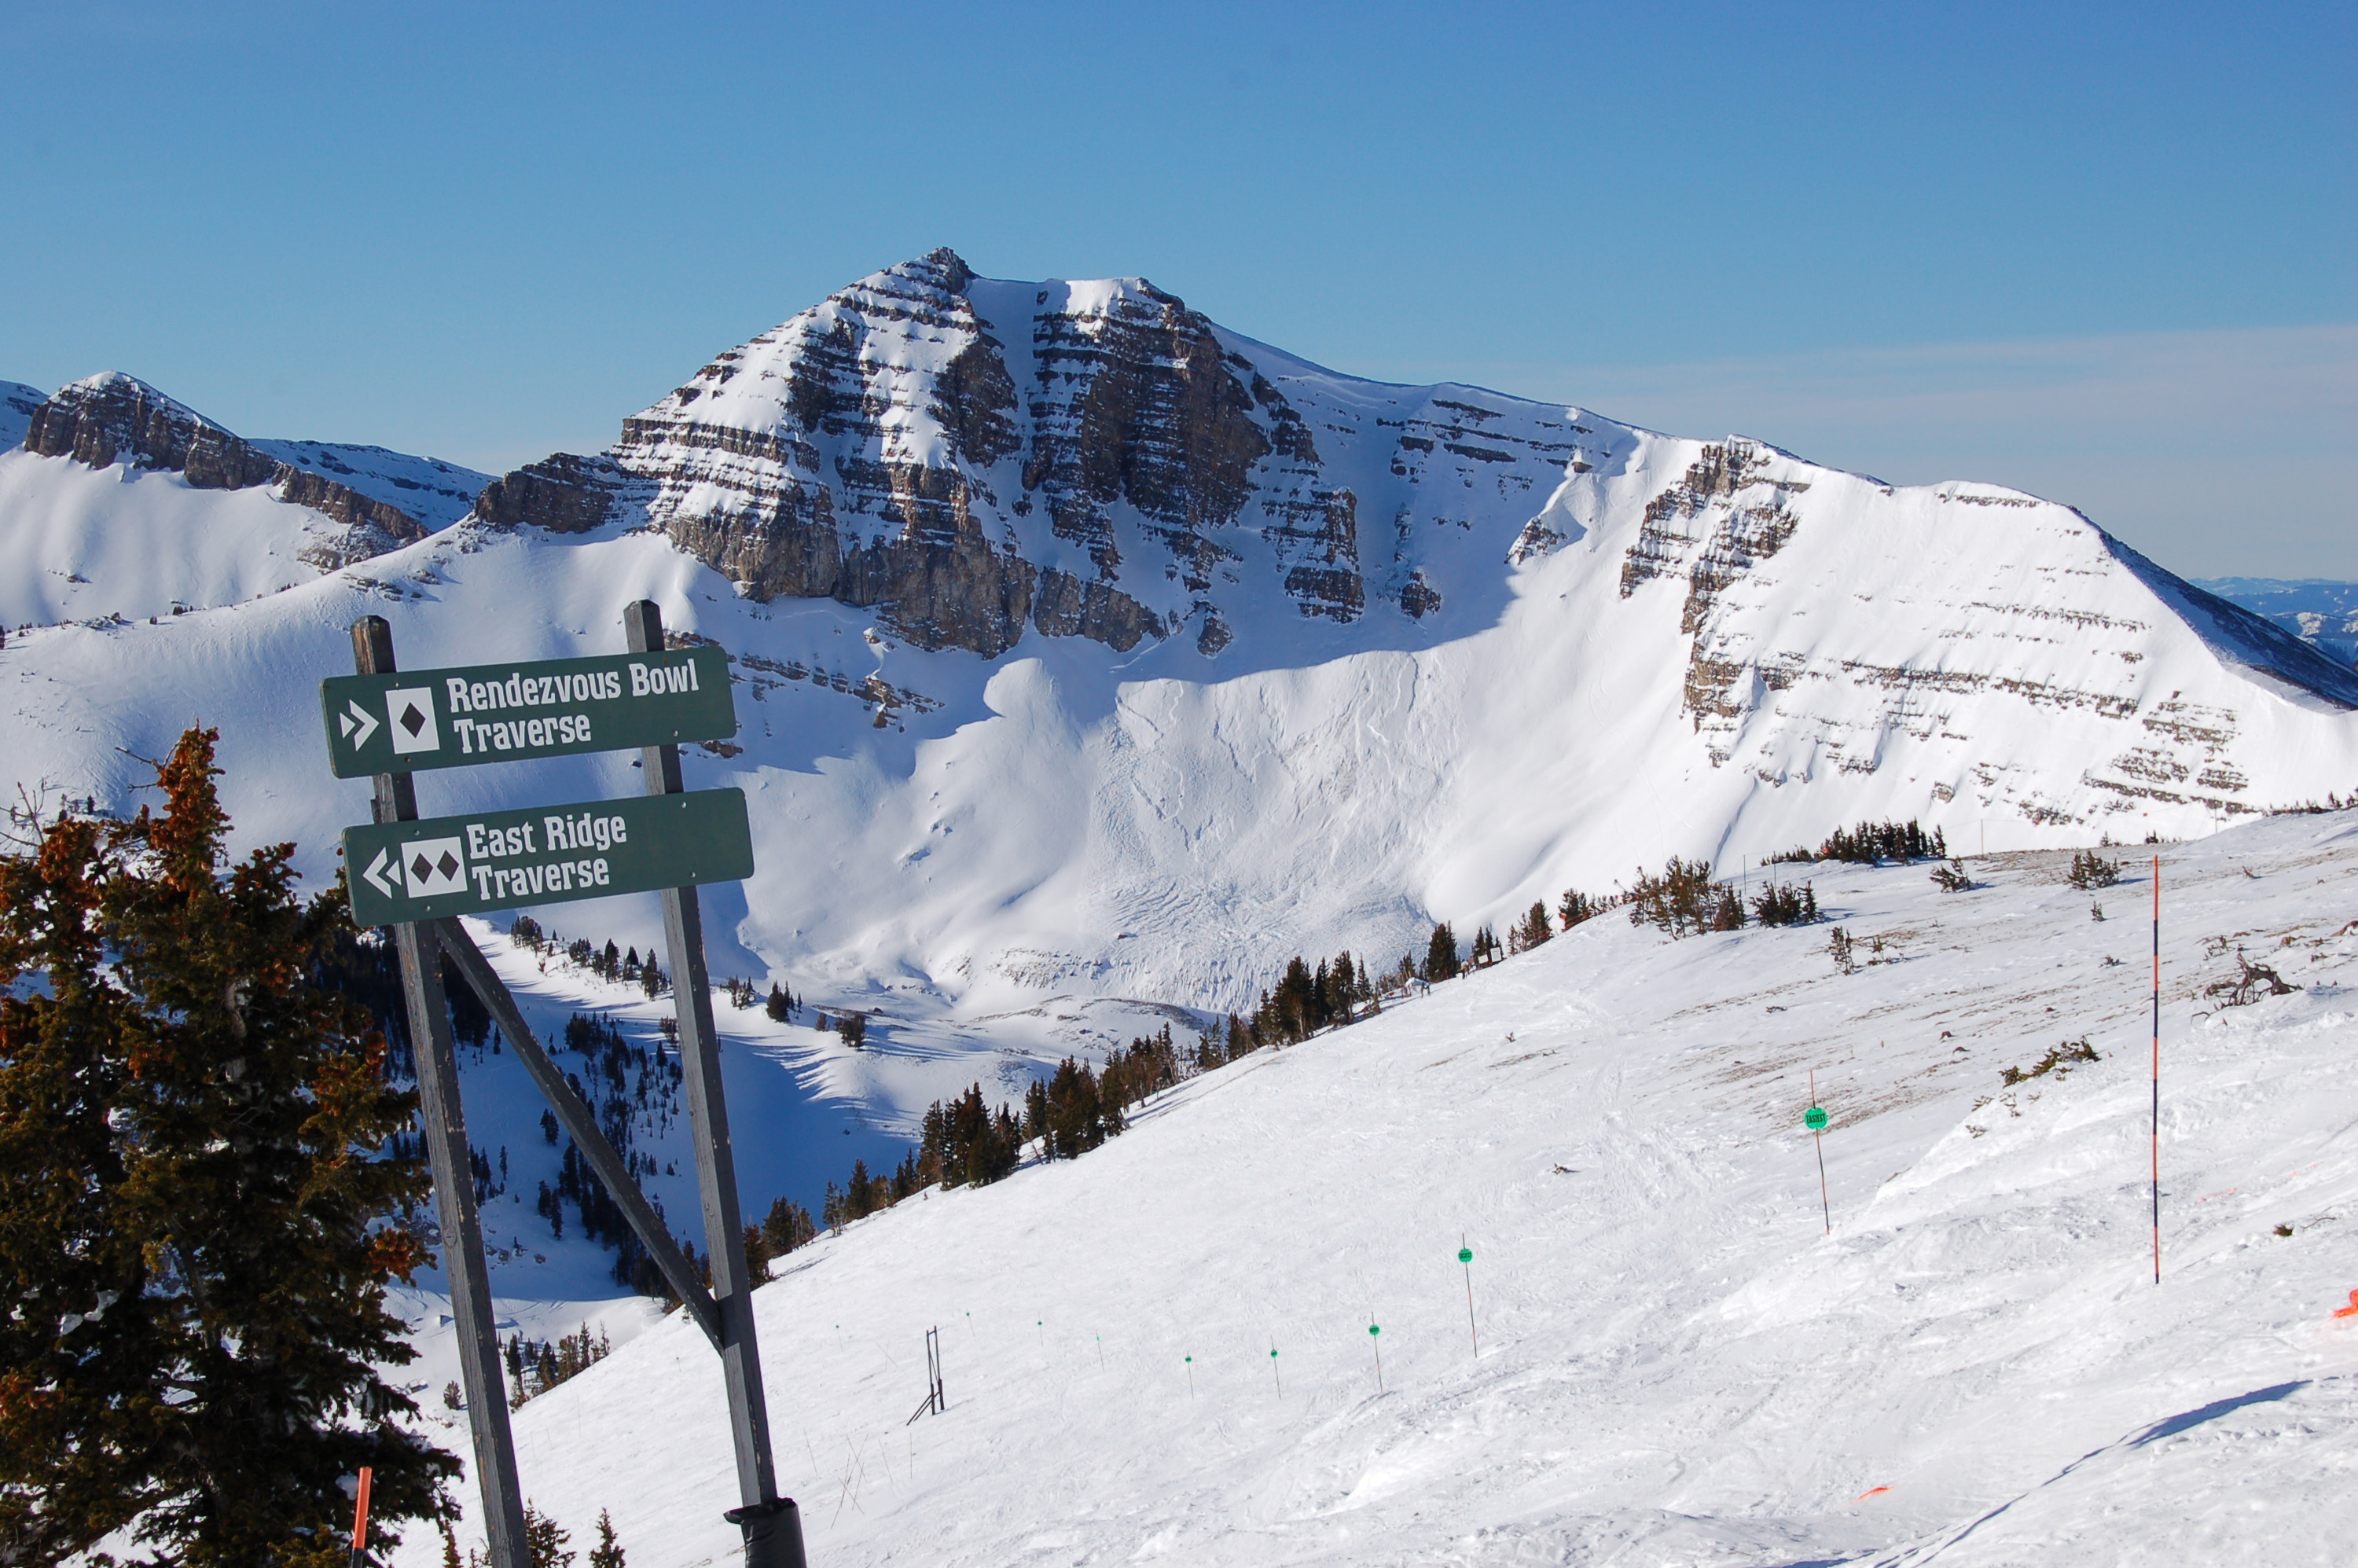 IKON skipas geeft toegang tot meerdere skigebieden in Canada en Amerika, ideaal voor een skisafari